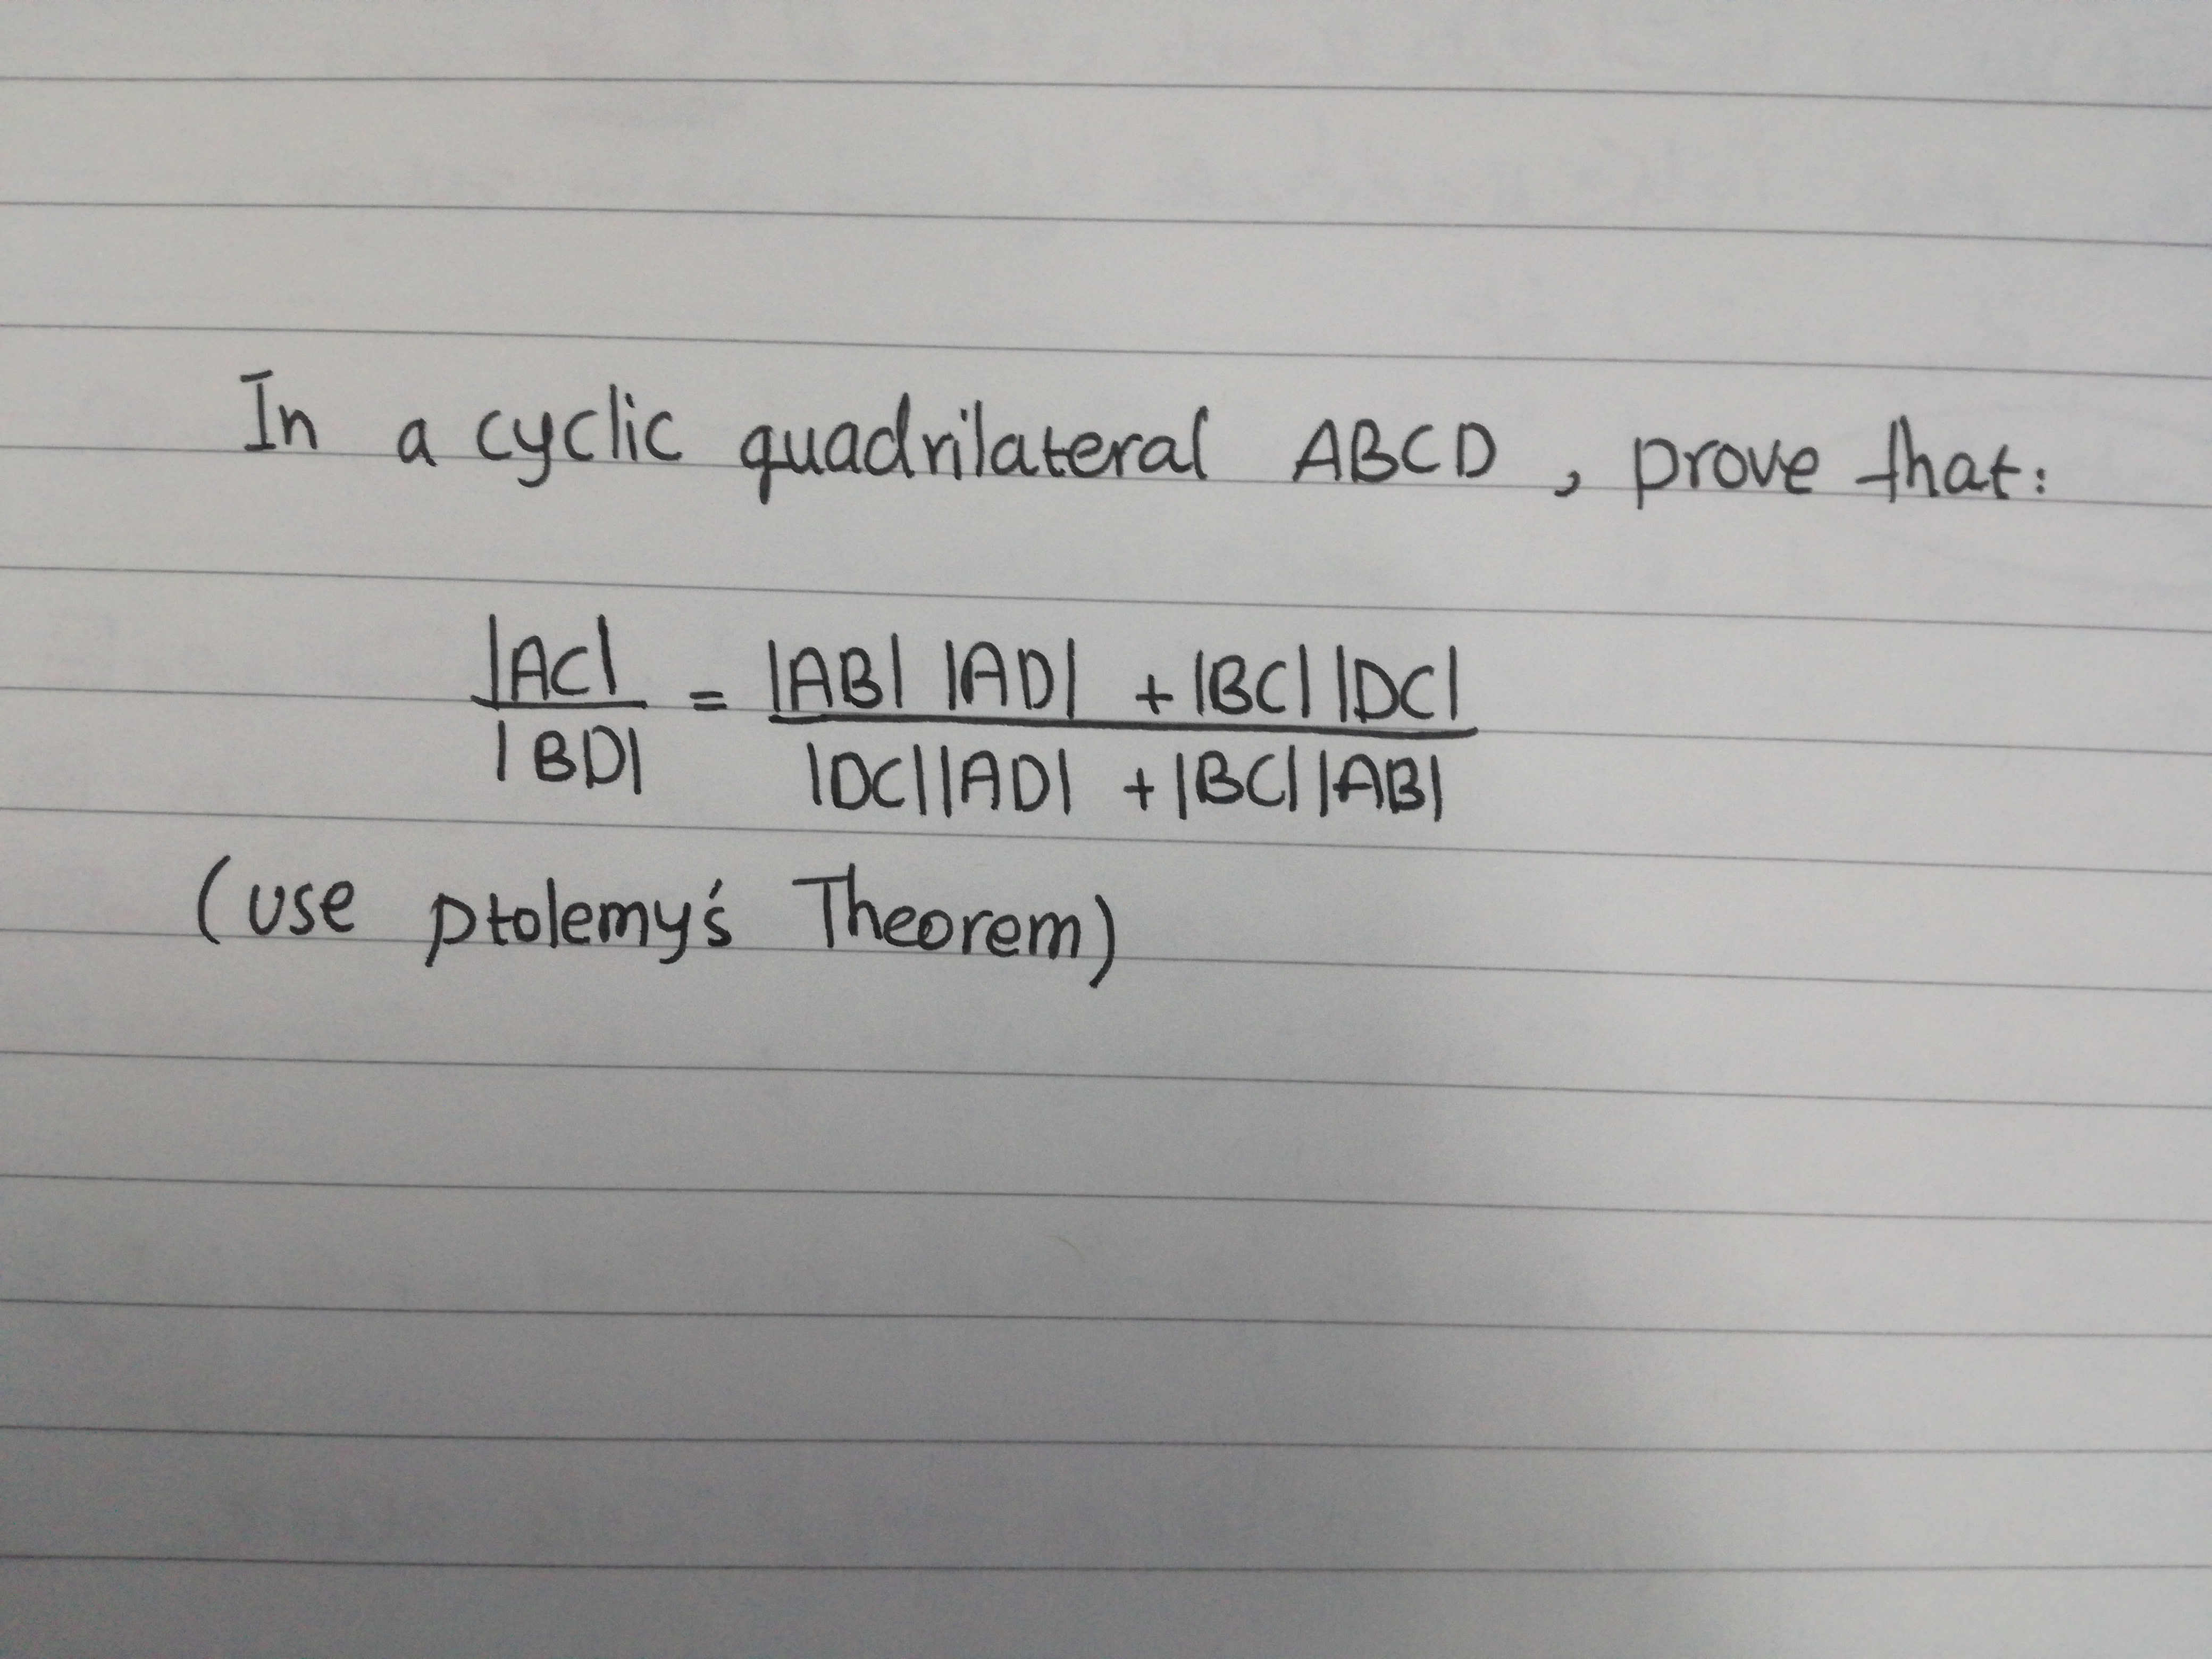 In
cyclic quadnilateral ABCD
prove that:
JACI
JABI IADI +1BC]
%3D
I BDI
loclADI +1BCI|ABI
+IBC||AB|
